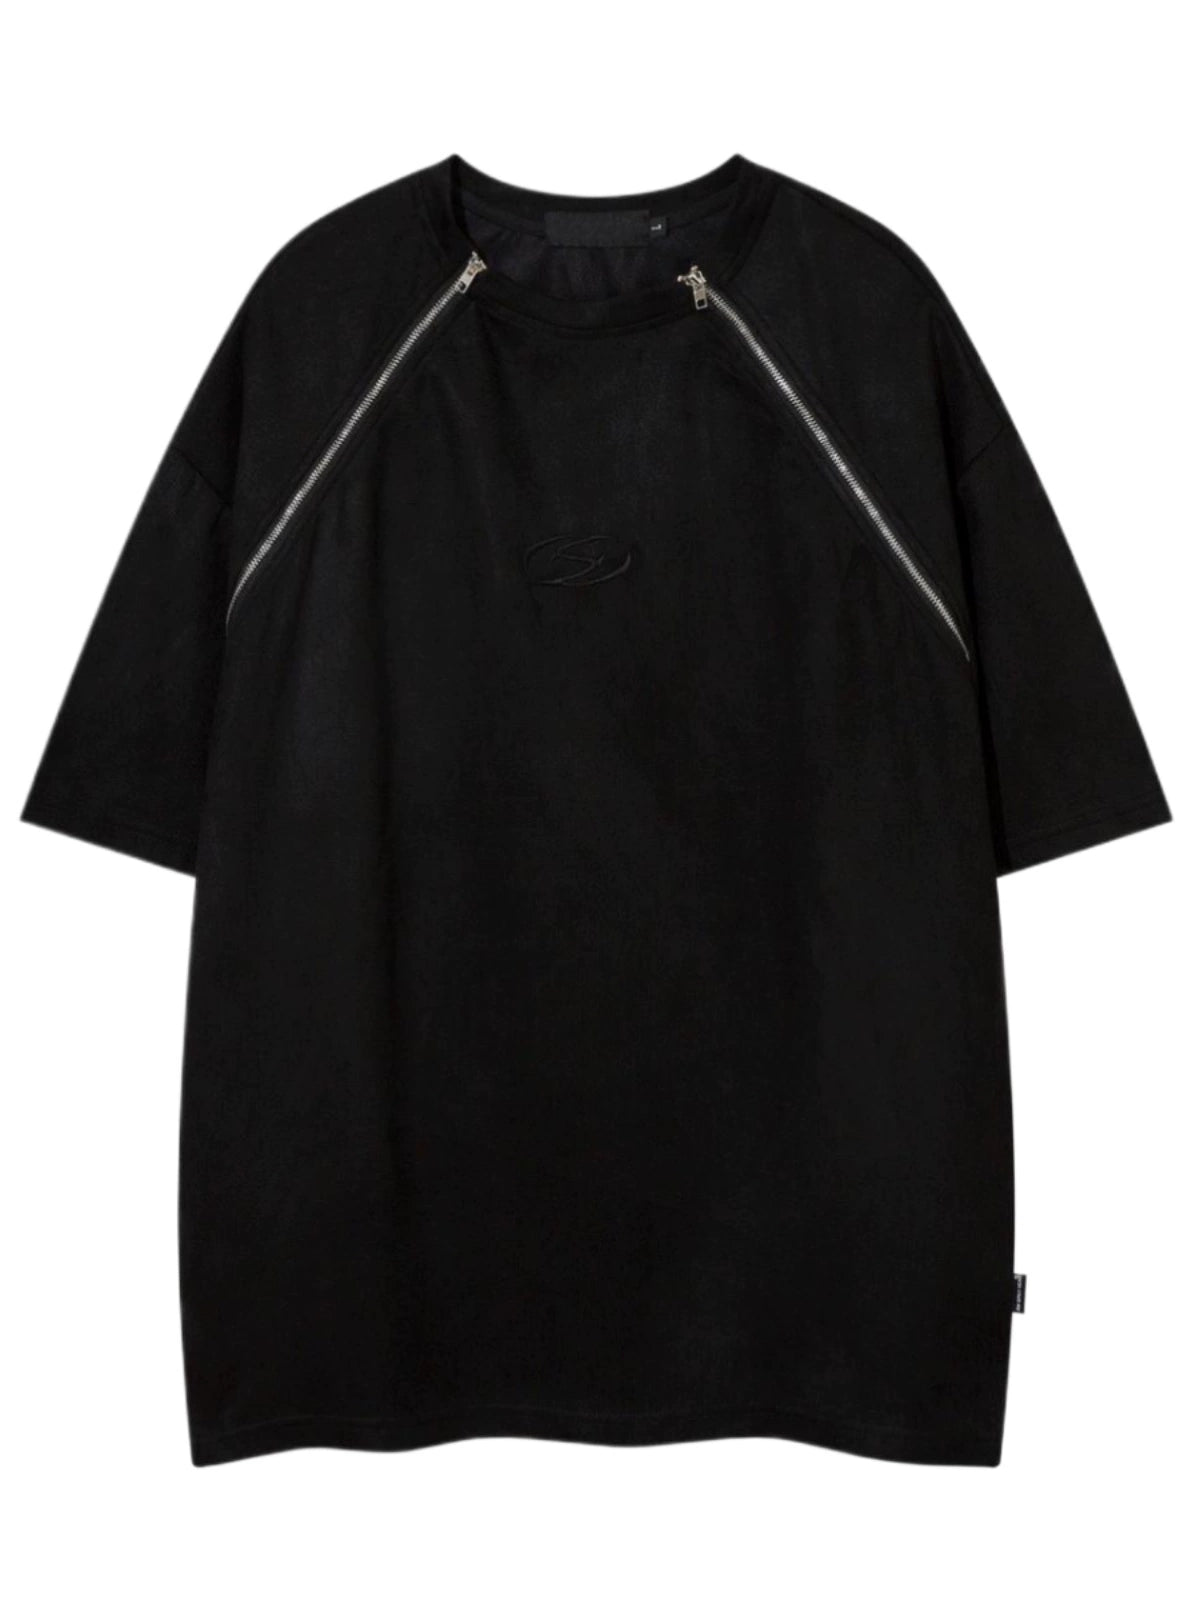 Zipper Design Embroidery Short Sleeve T-Shirt WN4666